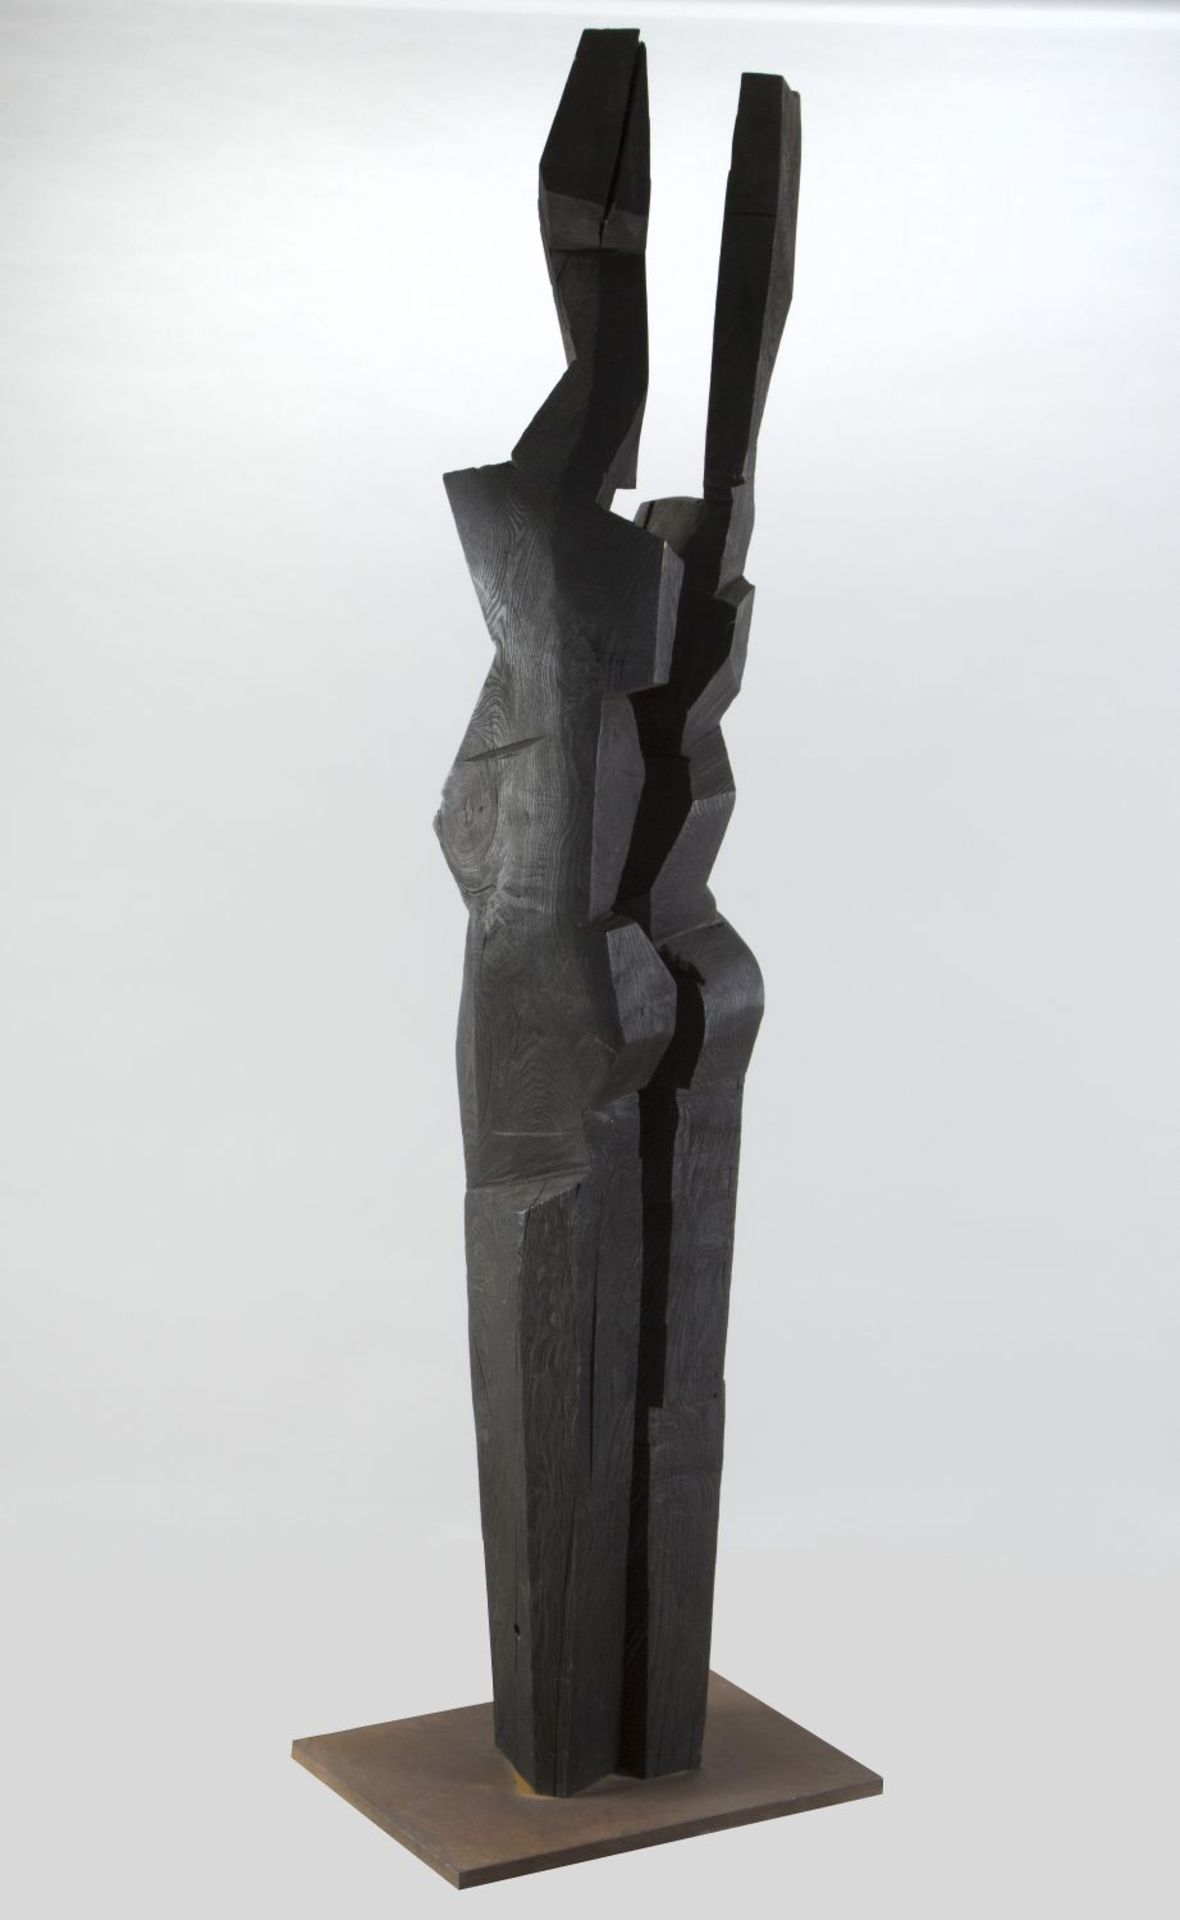 Jastram, Jan. 1958 Rostock Harmonisierende Stelen. Holz, geschwärzt. H. 246 cm. Auf Metallplatte mon - Bild 2 aus 2